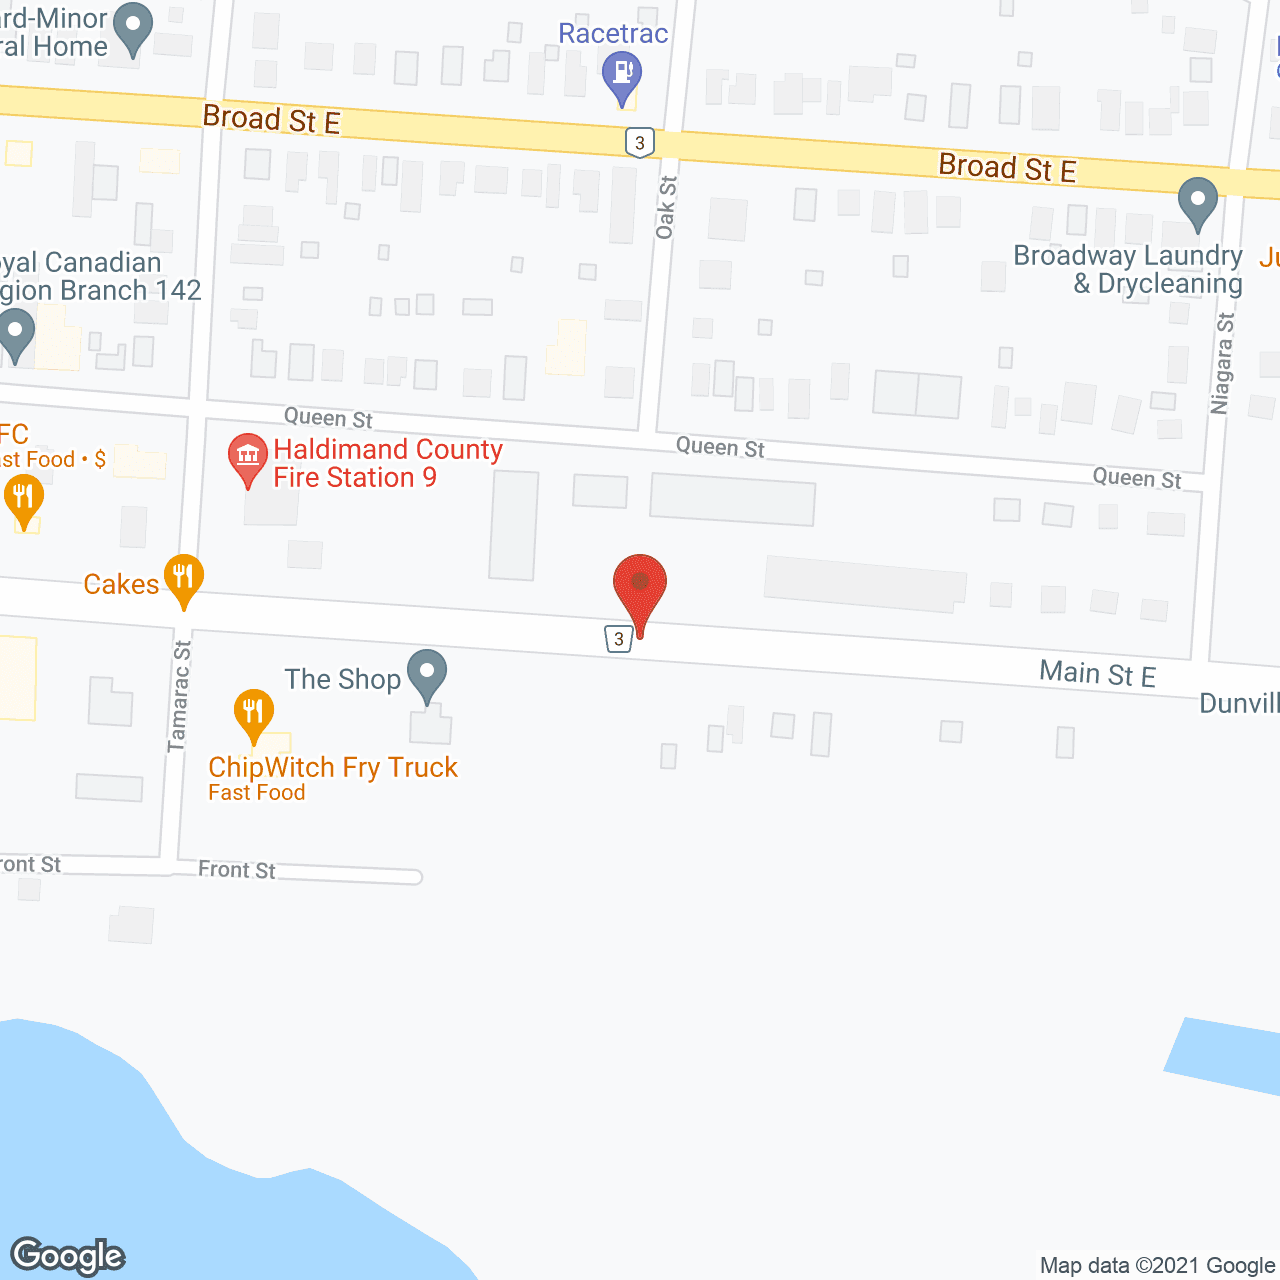 Heron Landing in google map